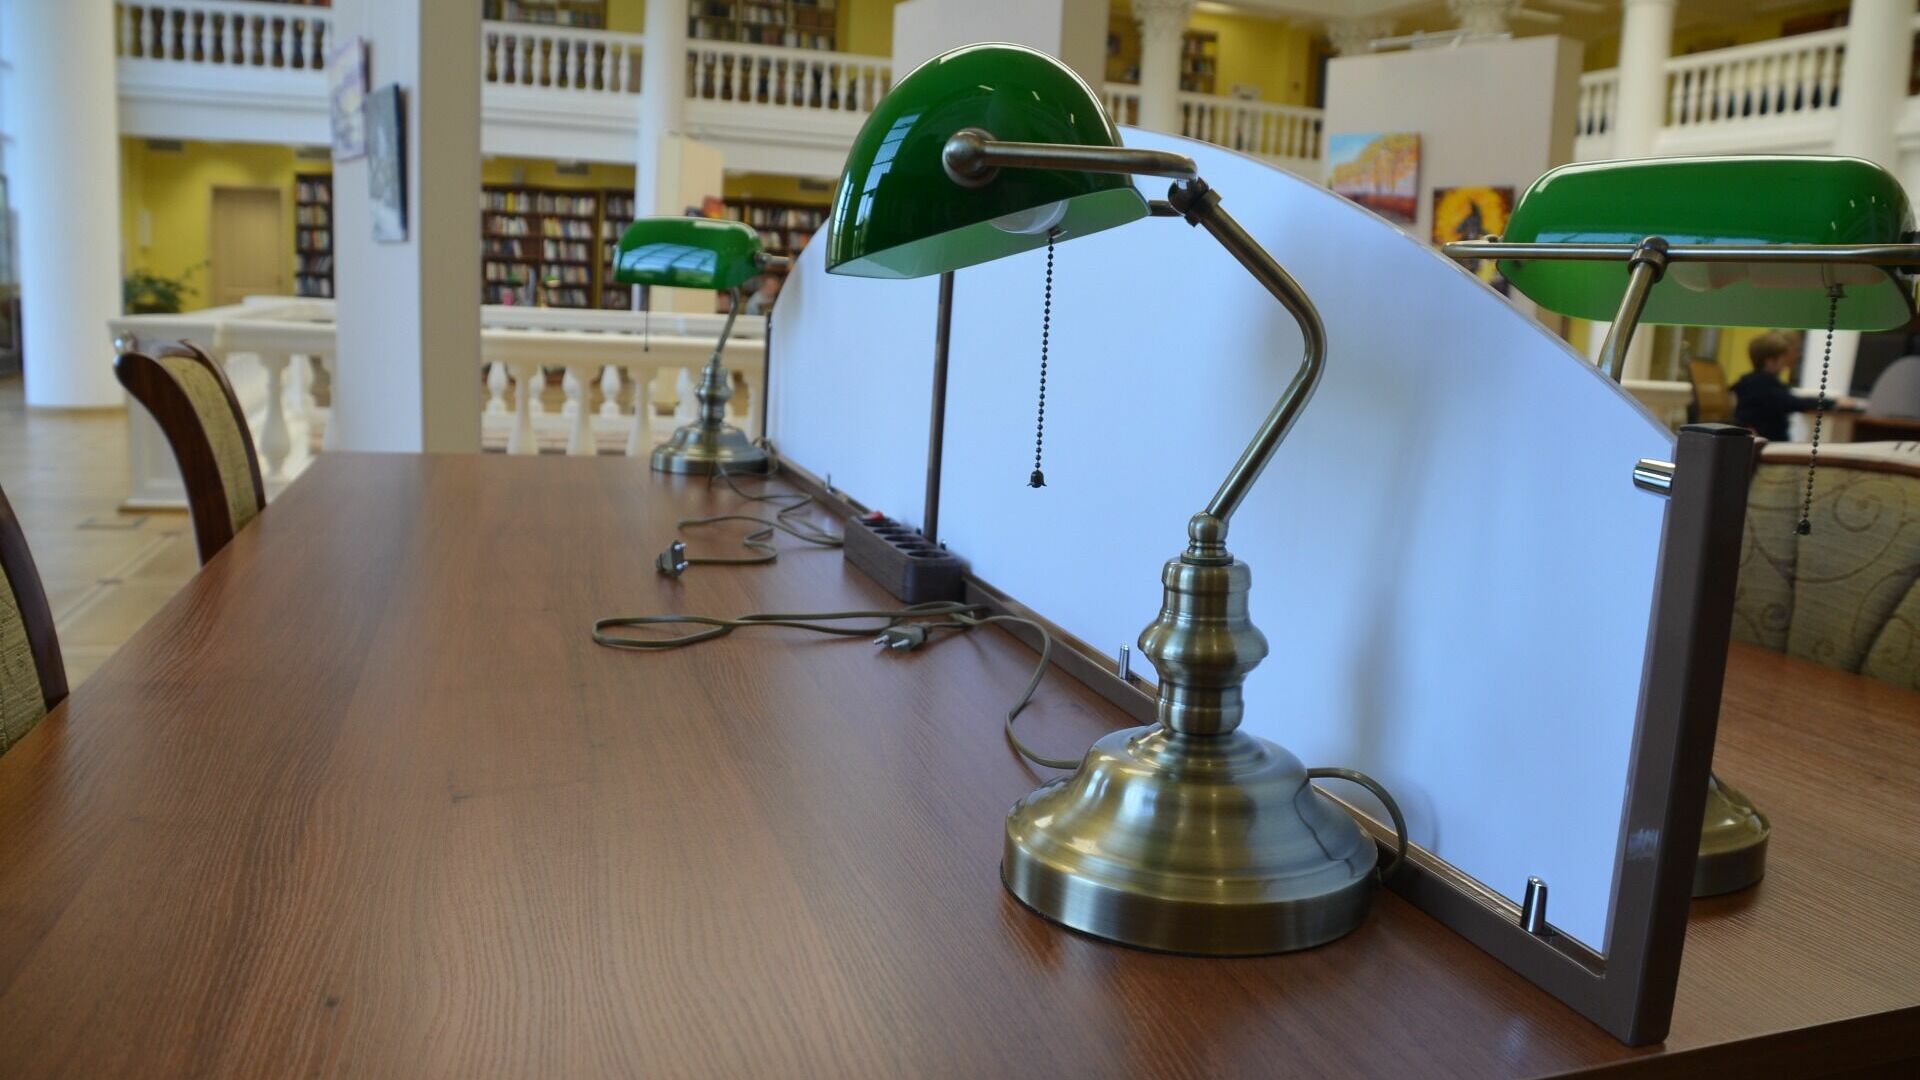 Централизованная библиотечная система Сургута отметила юбилей встречей с молодежью